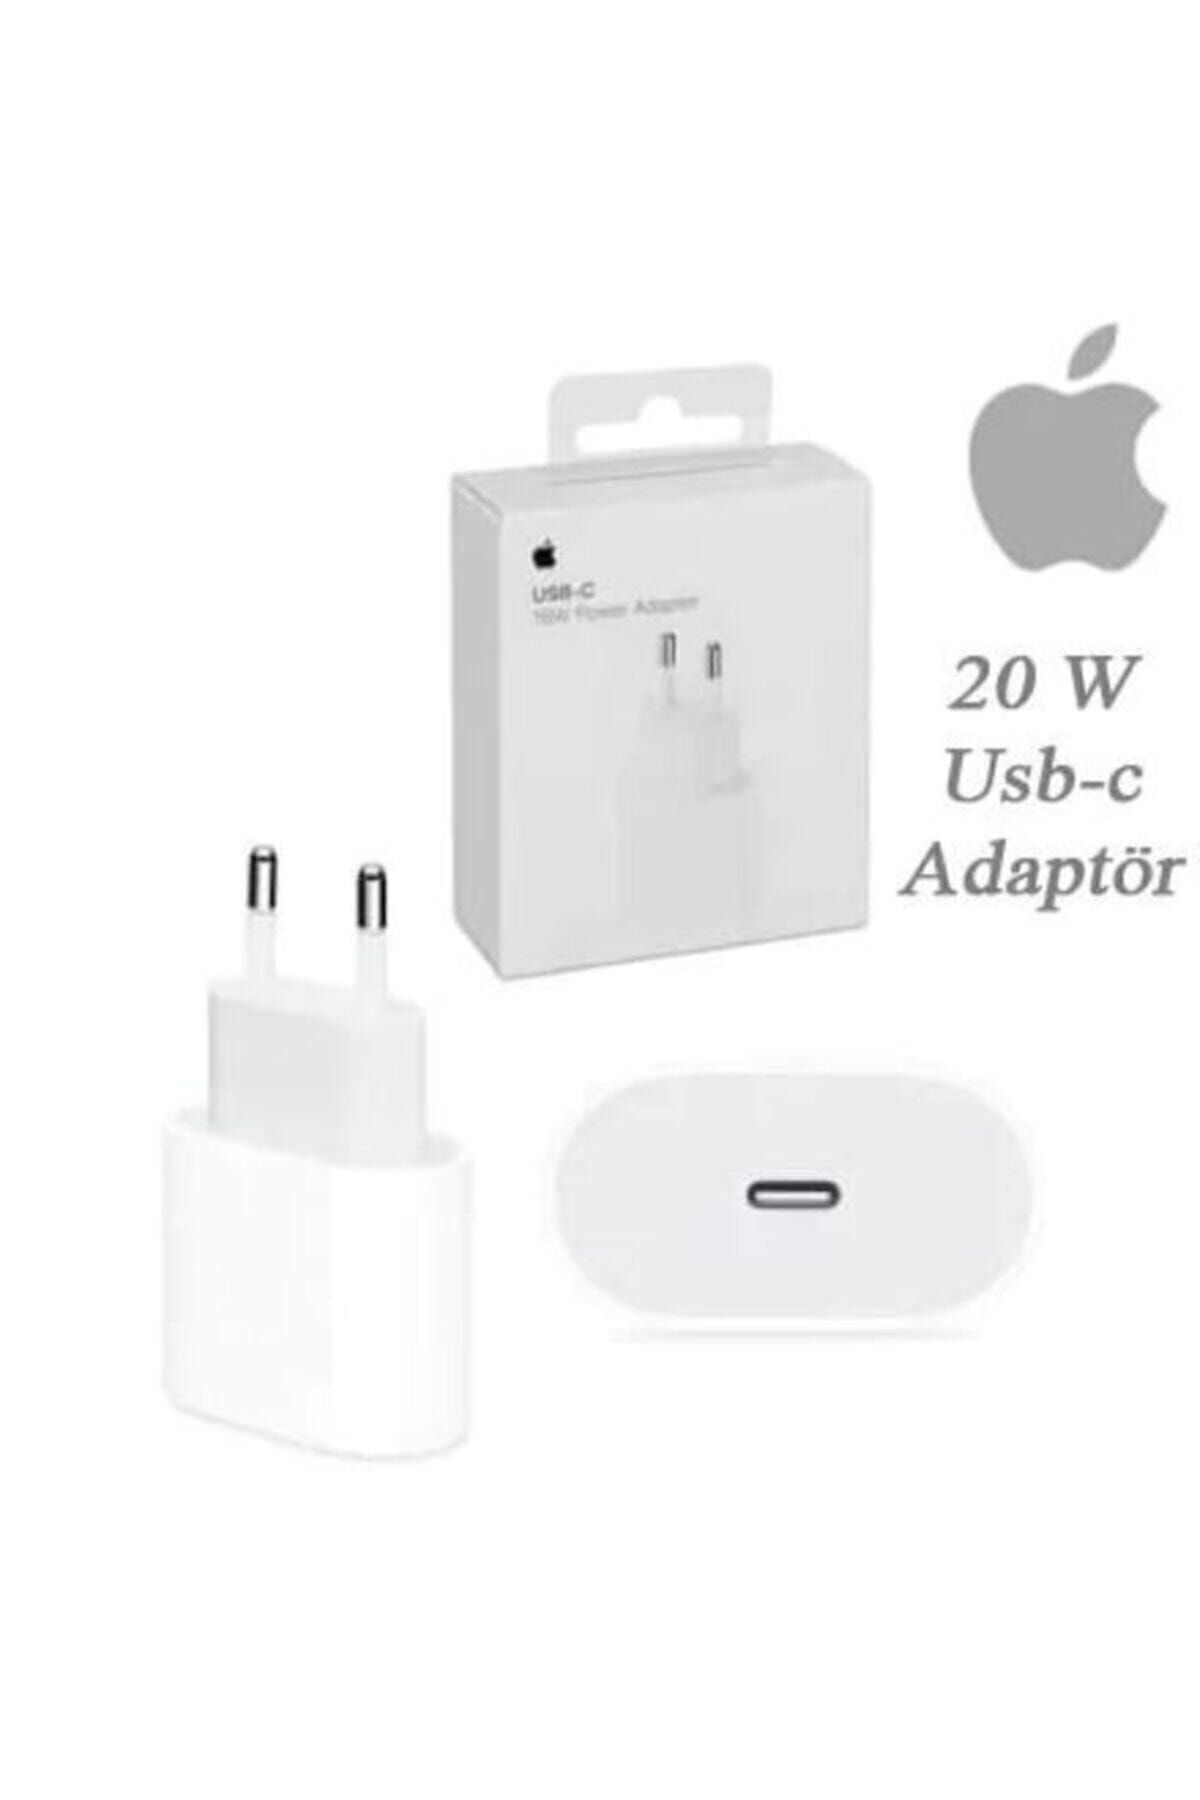 MY TECH Apple Iphone 20 W Uyumlu Usb-c Hızlı Şarj Adaptörü 11 /11 Pro Max 12/12 Pro Max Uyumlu